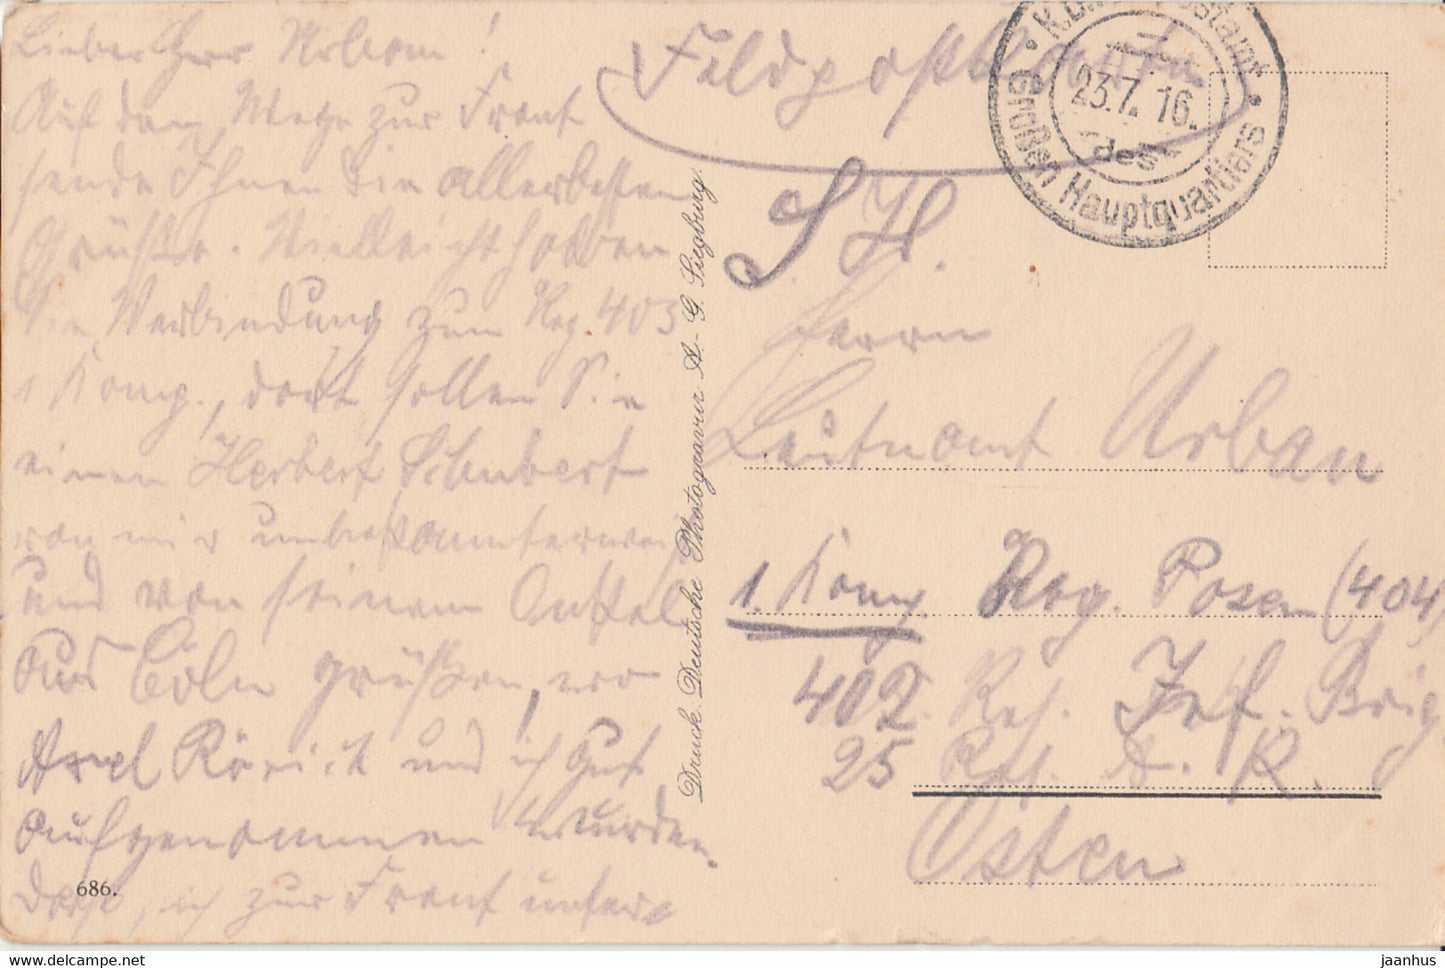 Köln a Rhein - Dom - Südseite - Feldpost - alte Postkarte - 1916 - Deutschland - gebraucht